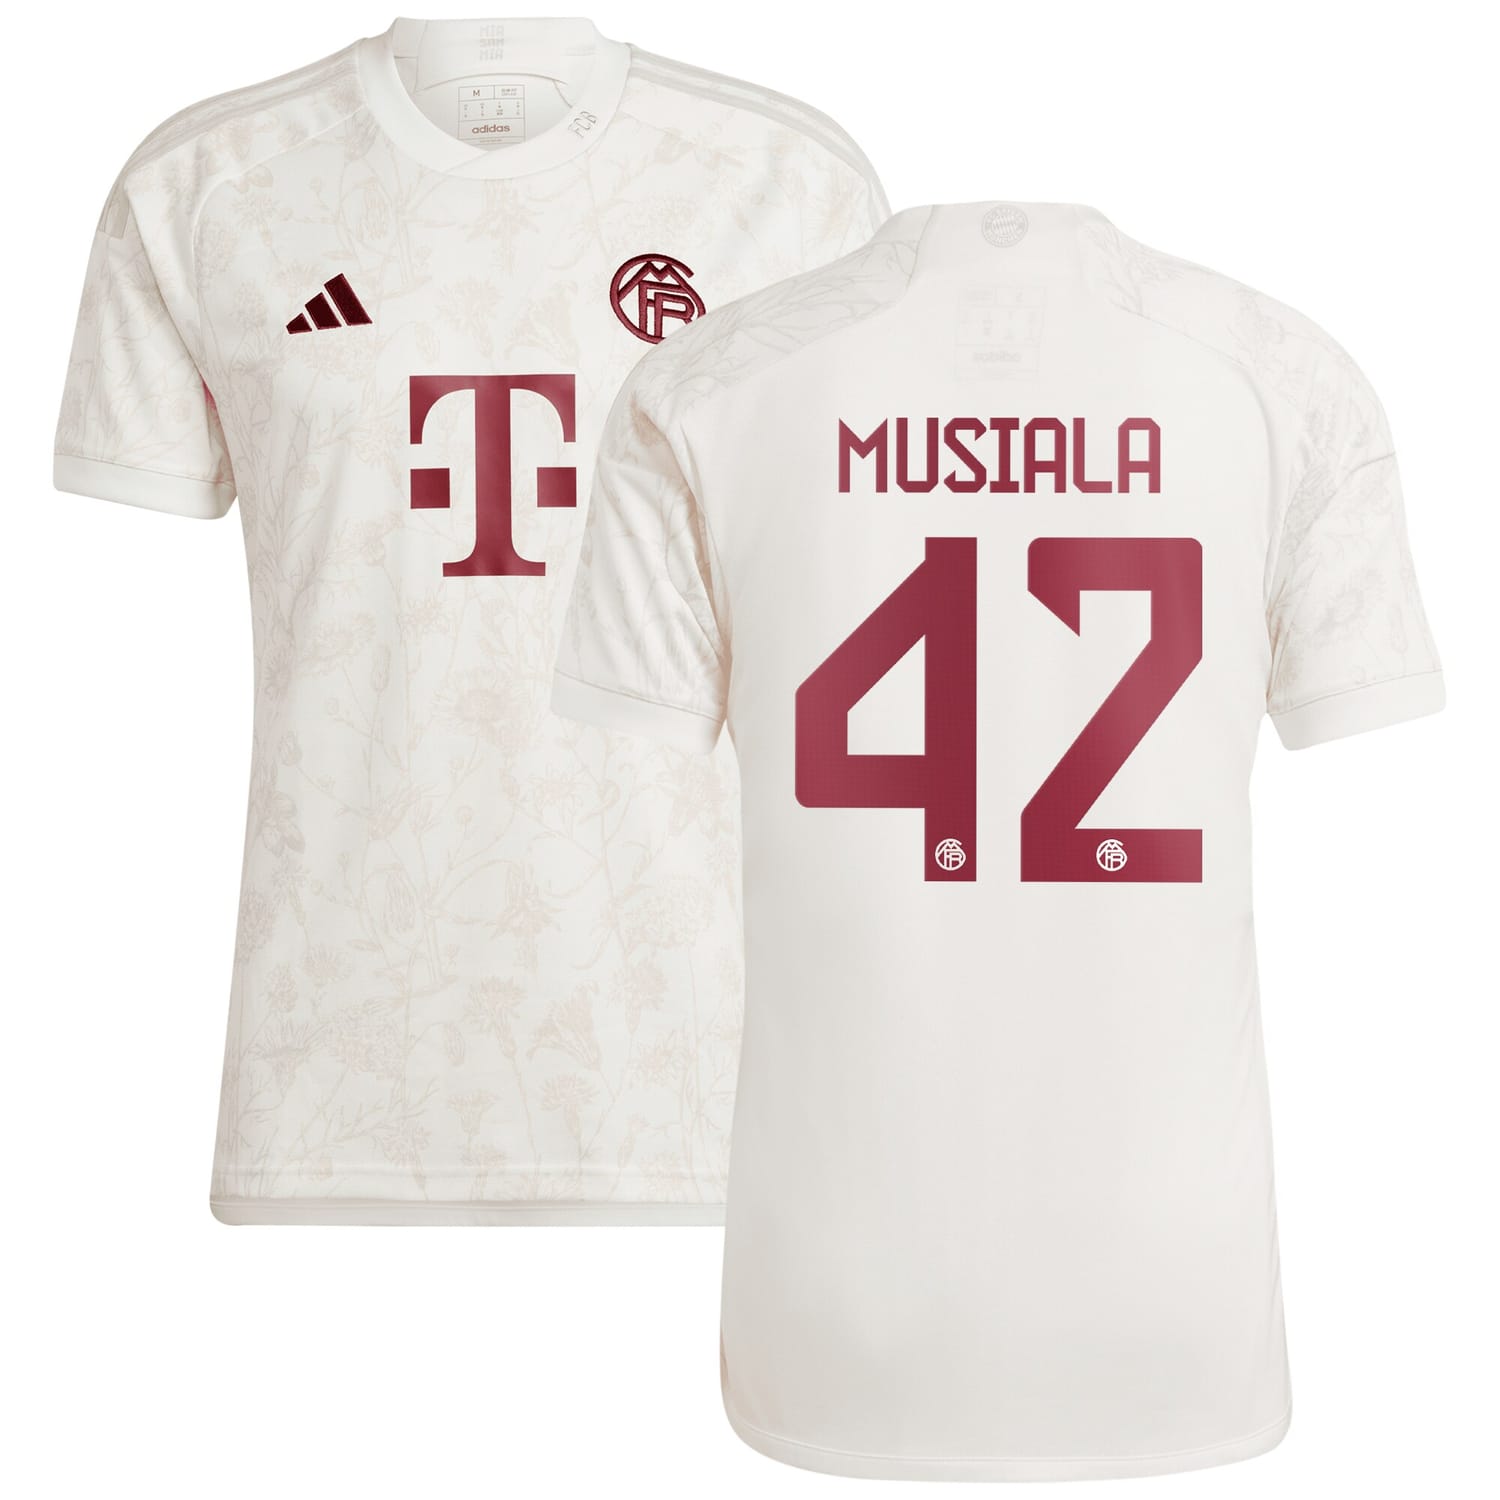 Bundesliga Bayern Munich Third Jersey Shirt White 2023-24 player Jamal Musiala printing for Men